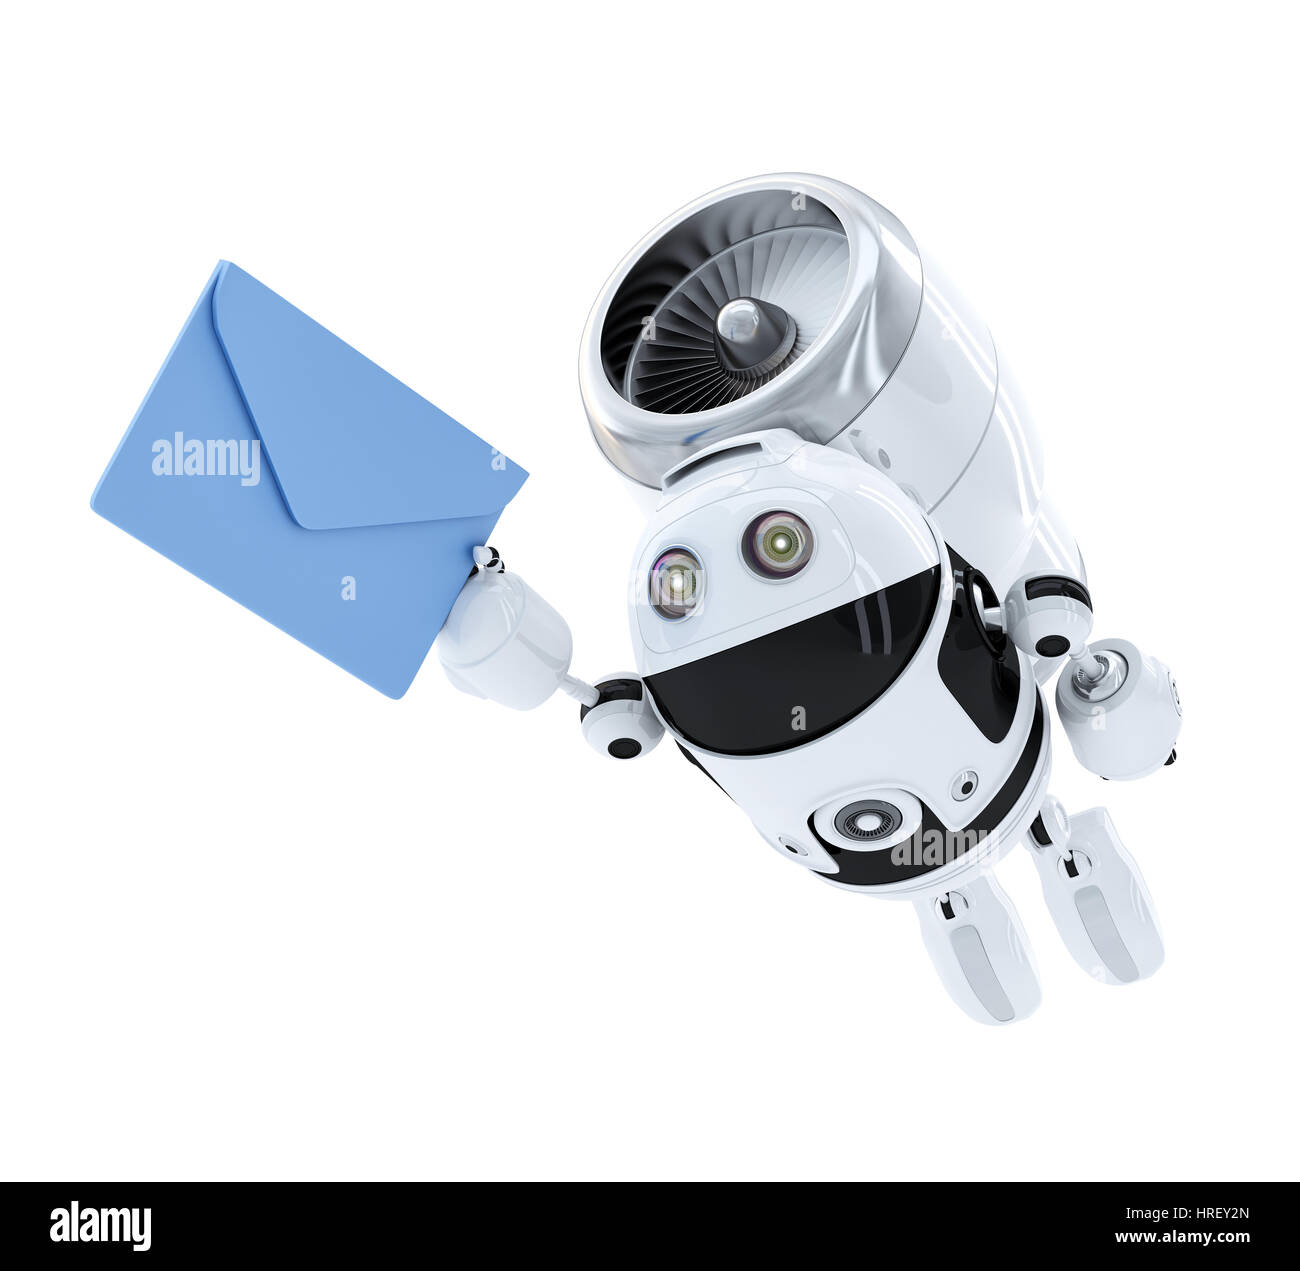 Robot Android flying avec envelppe. E-mail concept de livraison. Isolé Banque D'Images